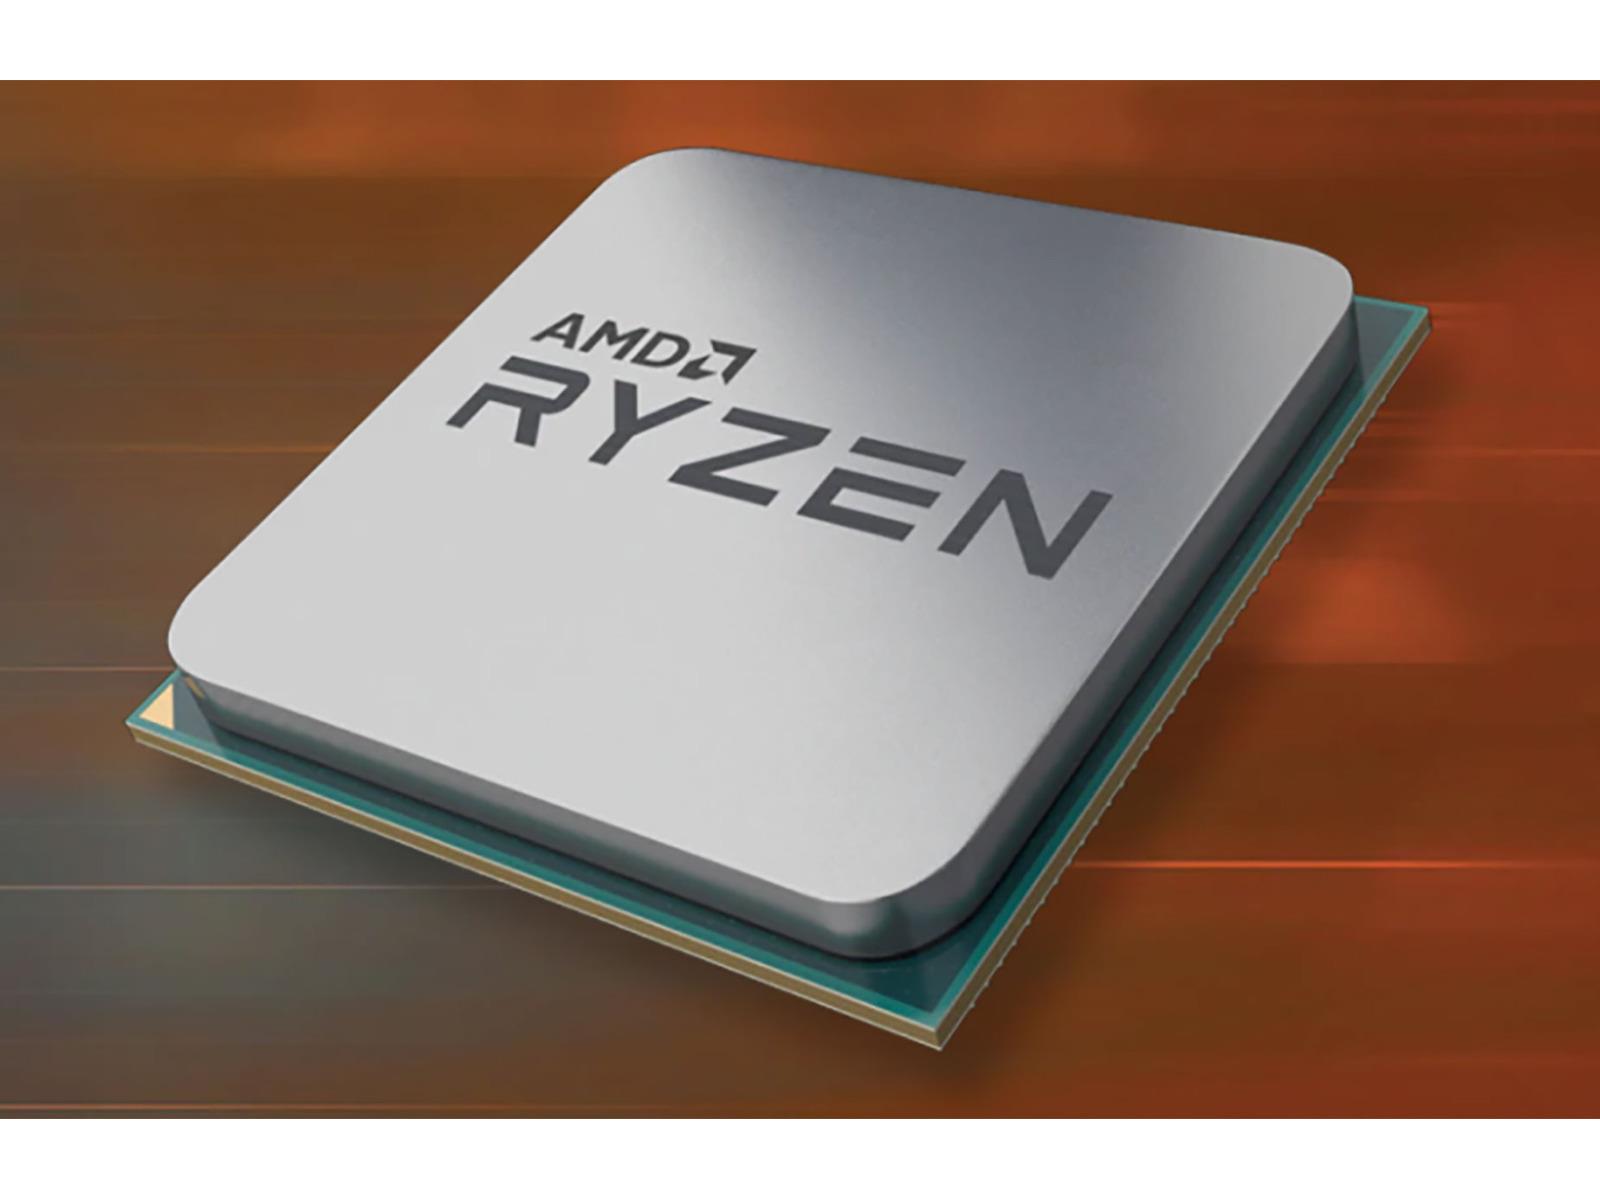 AMD's Unreleased Ryzen 5700G Zen 3 Desktop APU Overclocked 